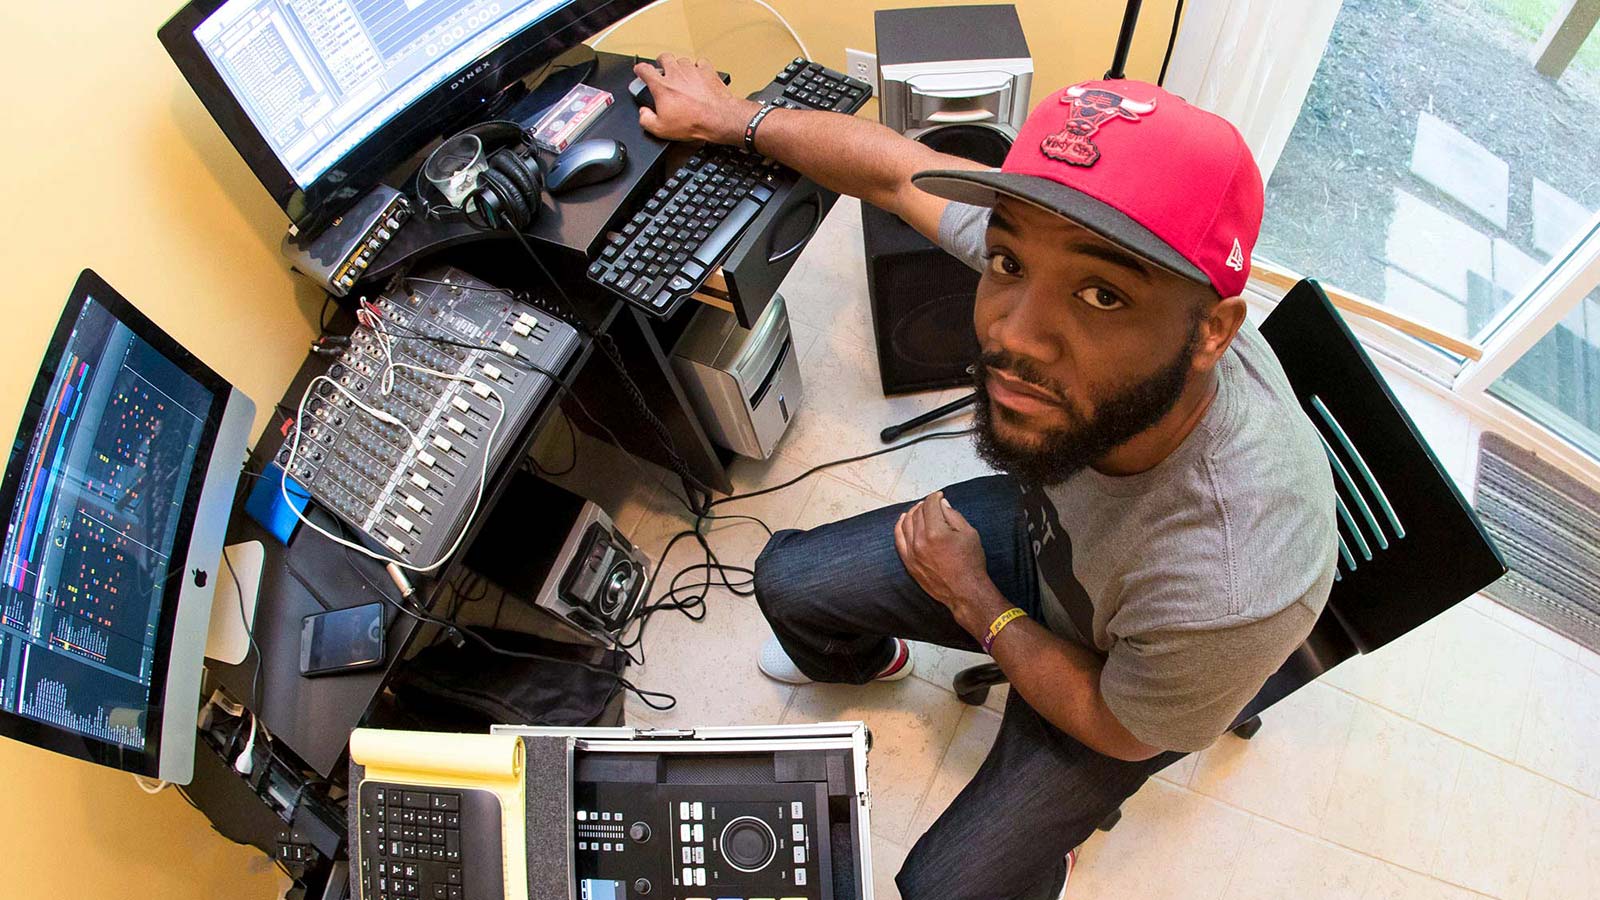 Hip-hop professor looks to open doors with world’s first peer-reviewed rap album